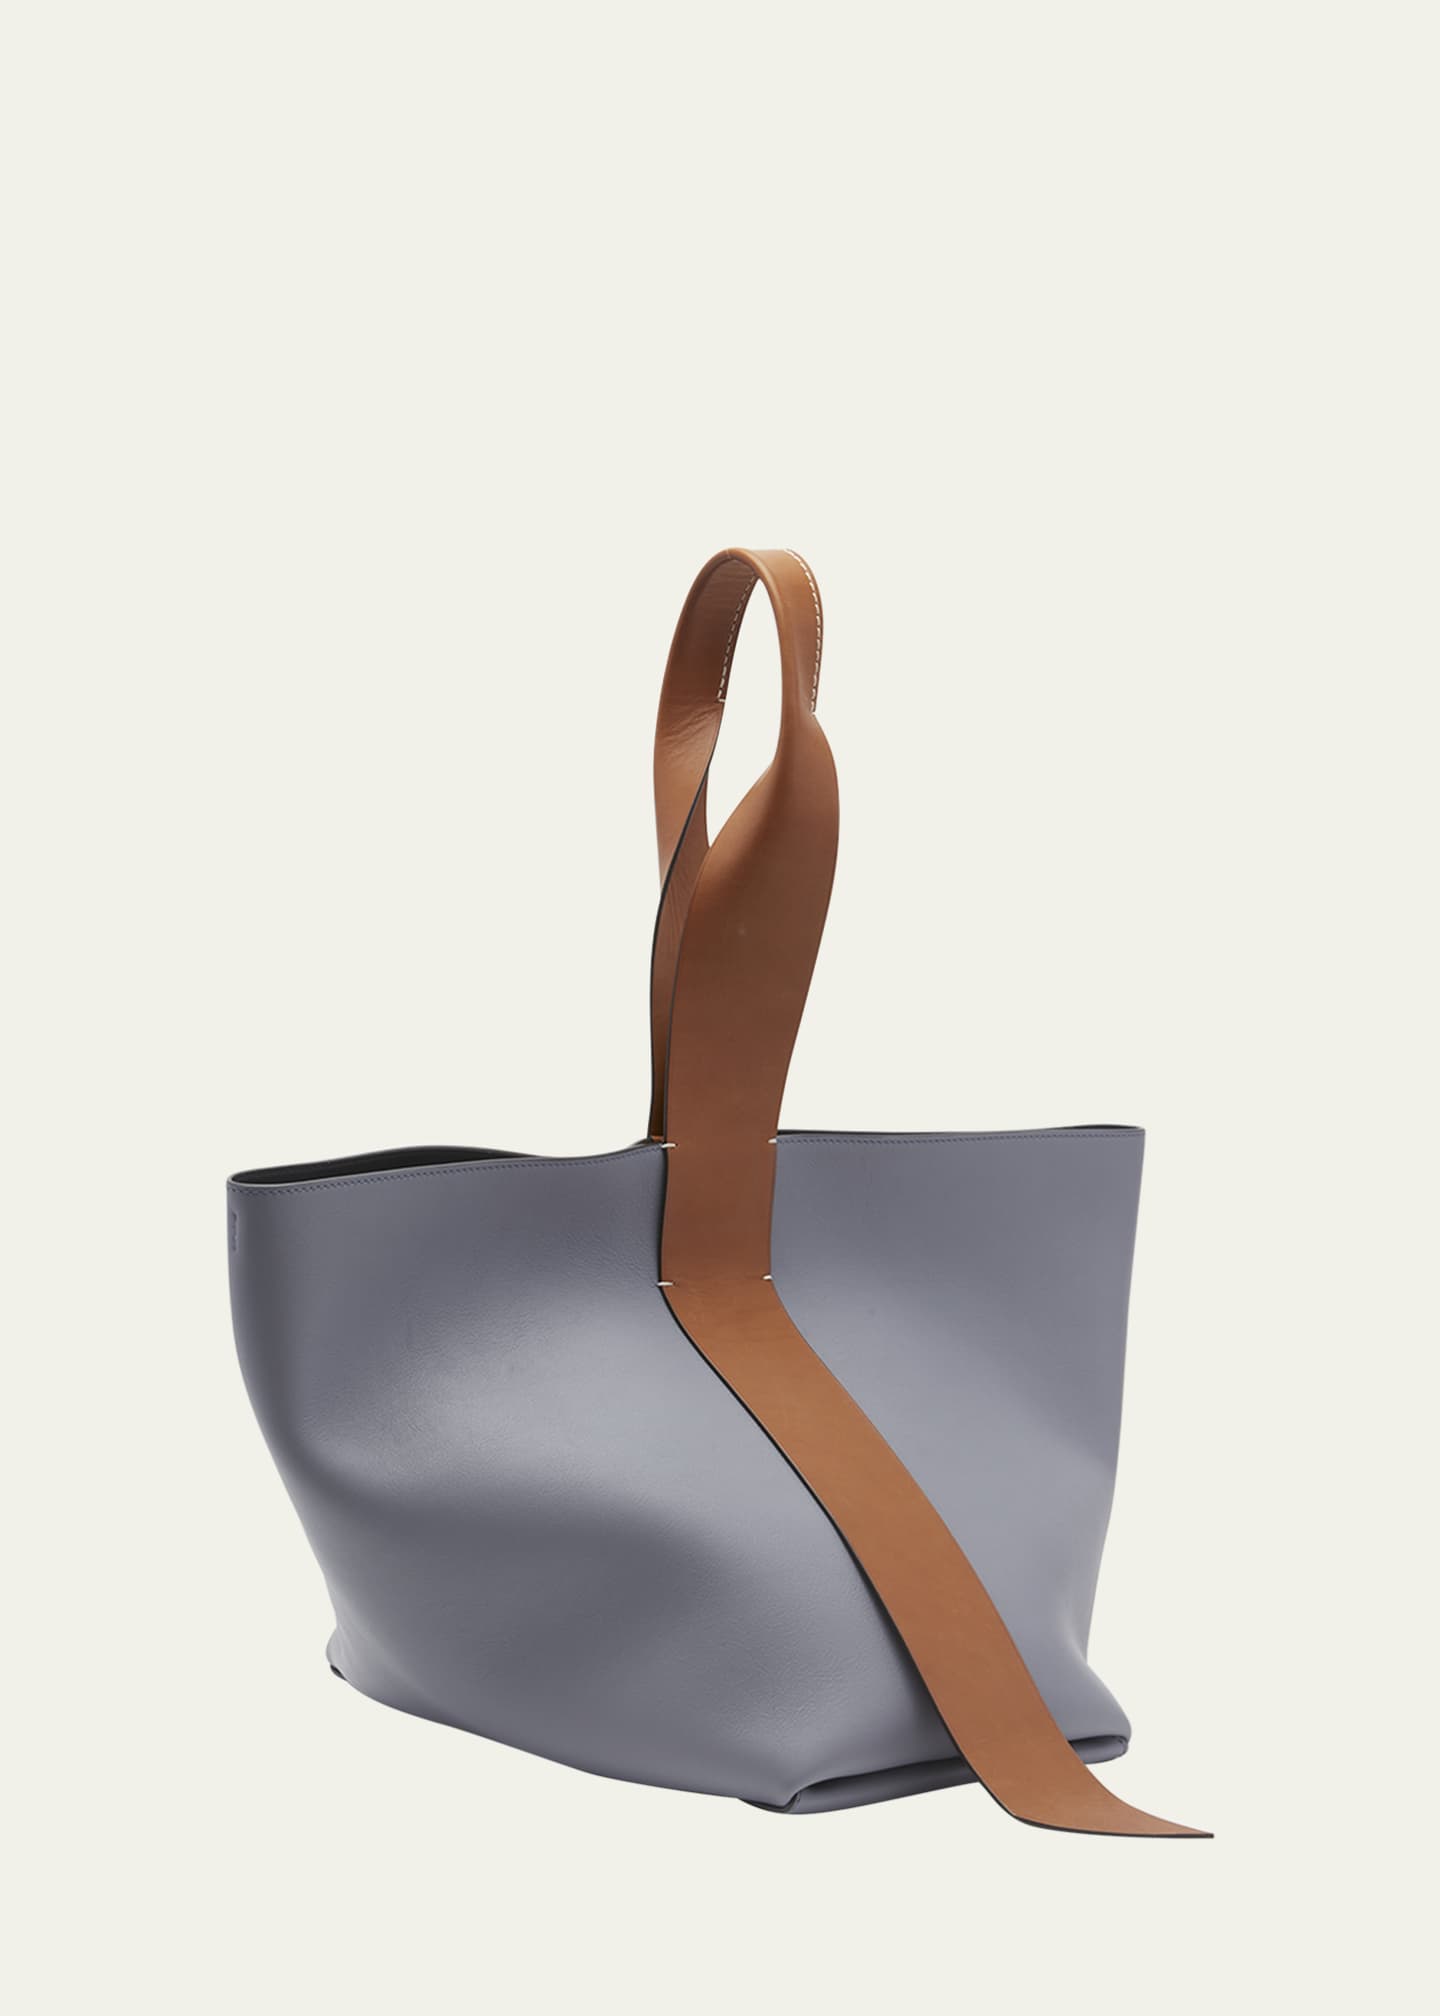 Jil Sander Medium Leather Twist Shoulder Bag